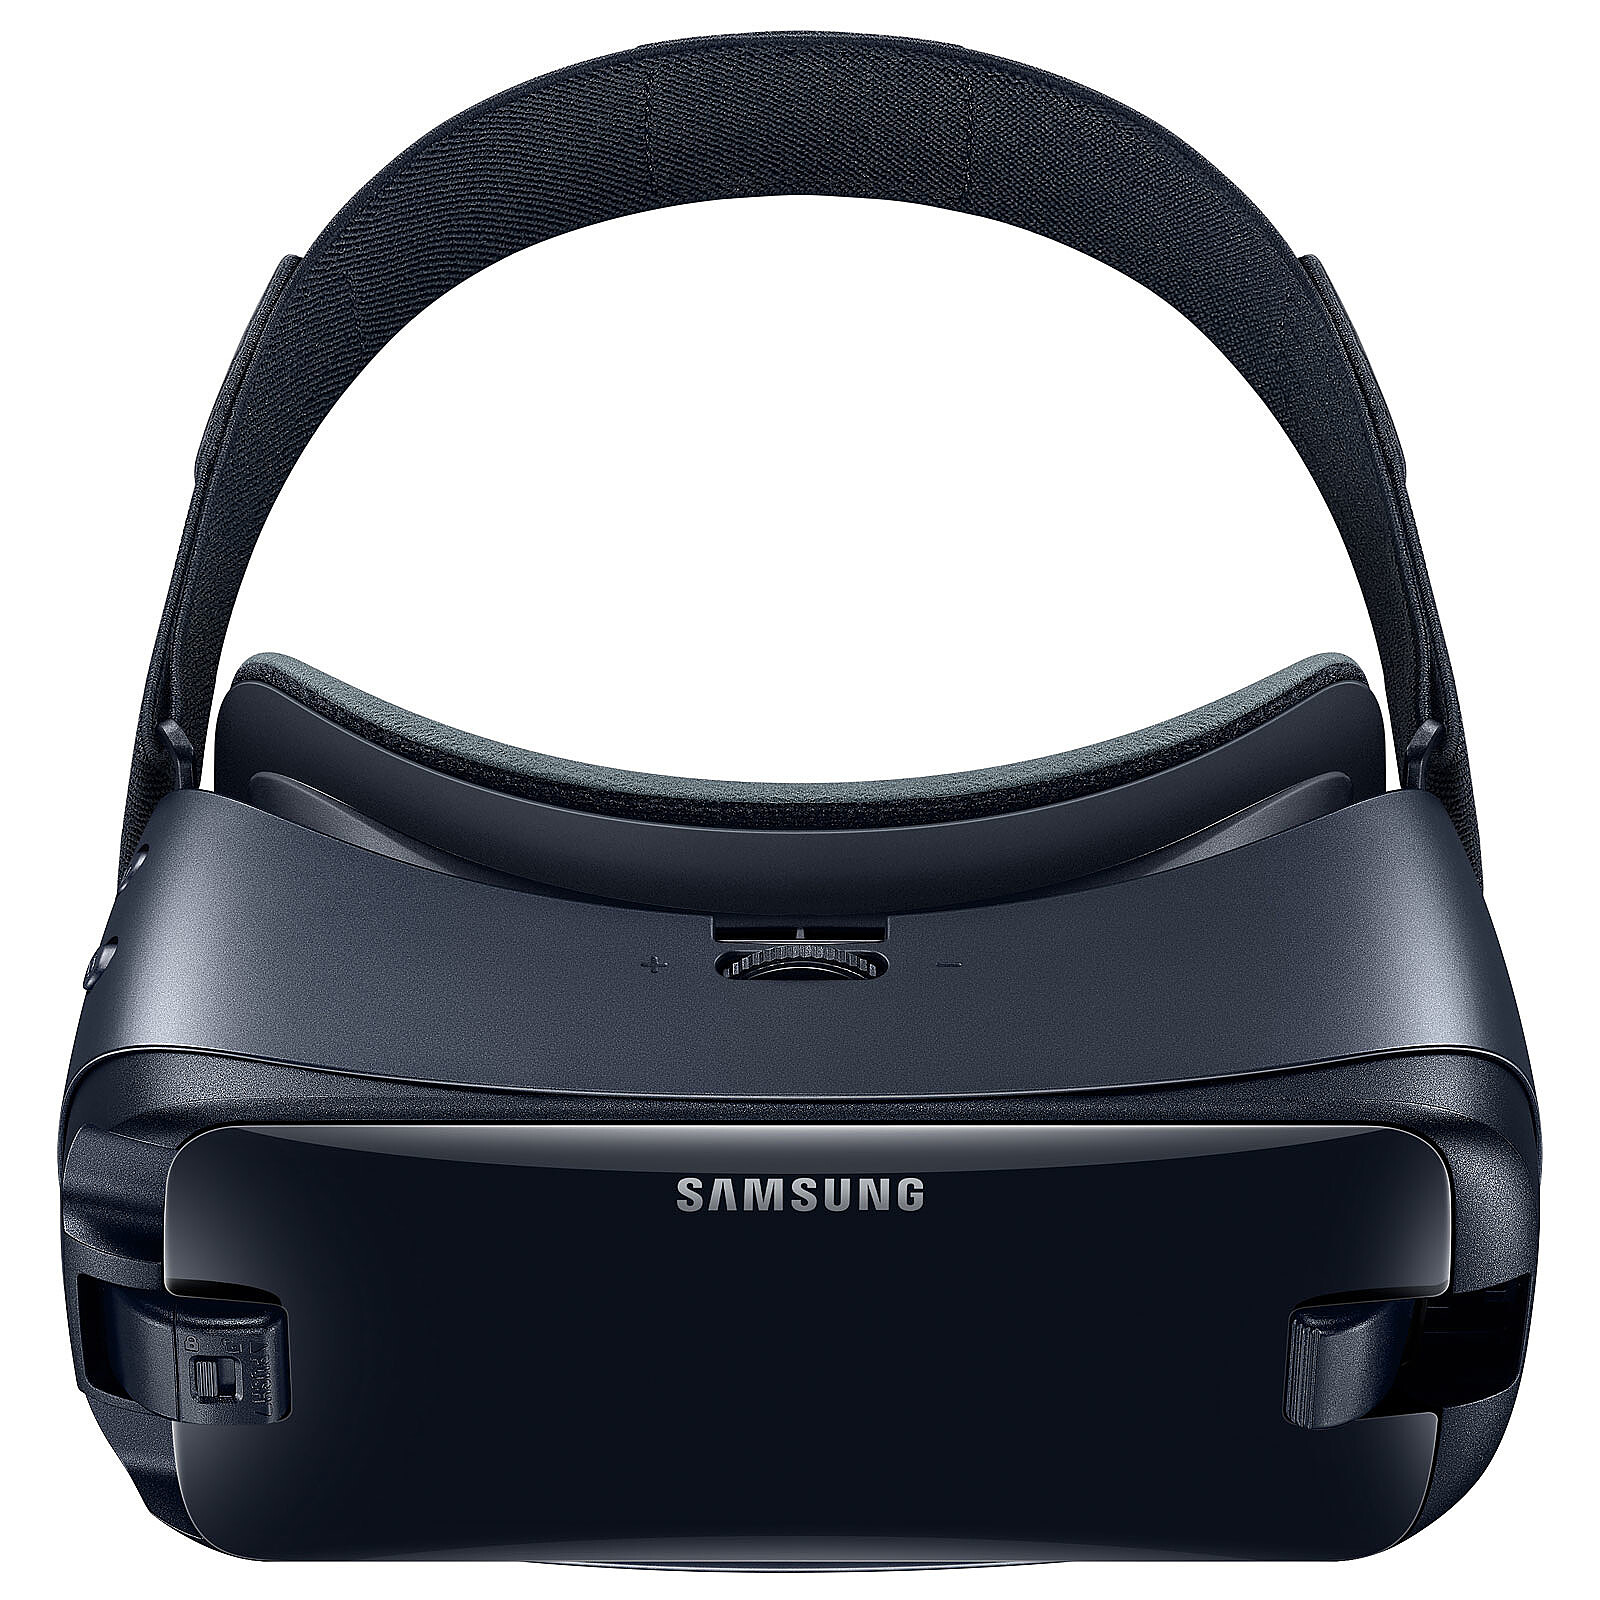 Samsung Gear VR, le casque réservé au Galaxy Note 4